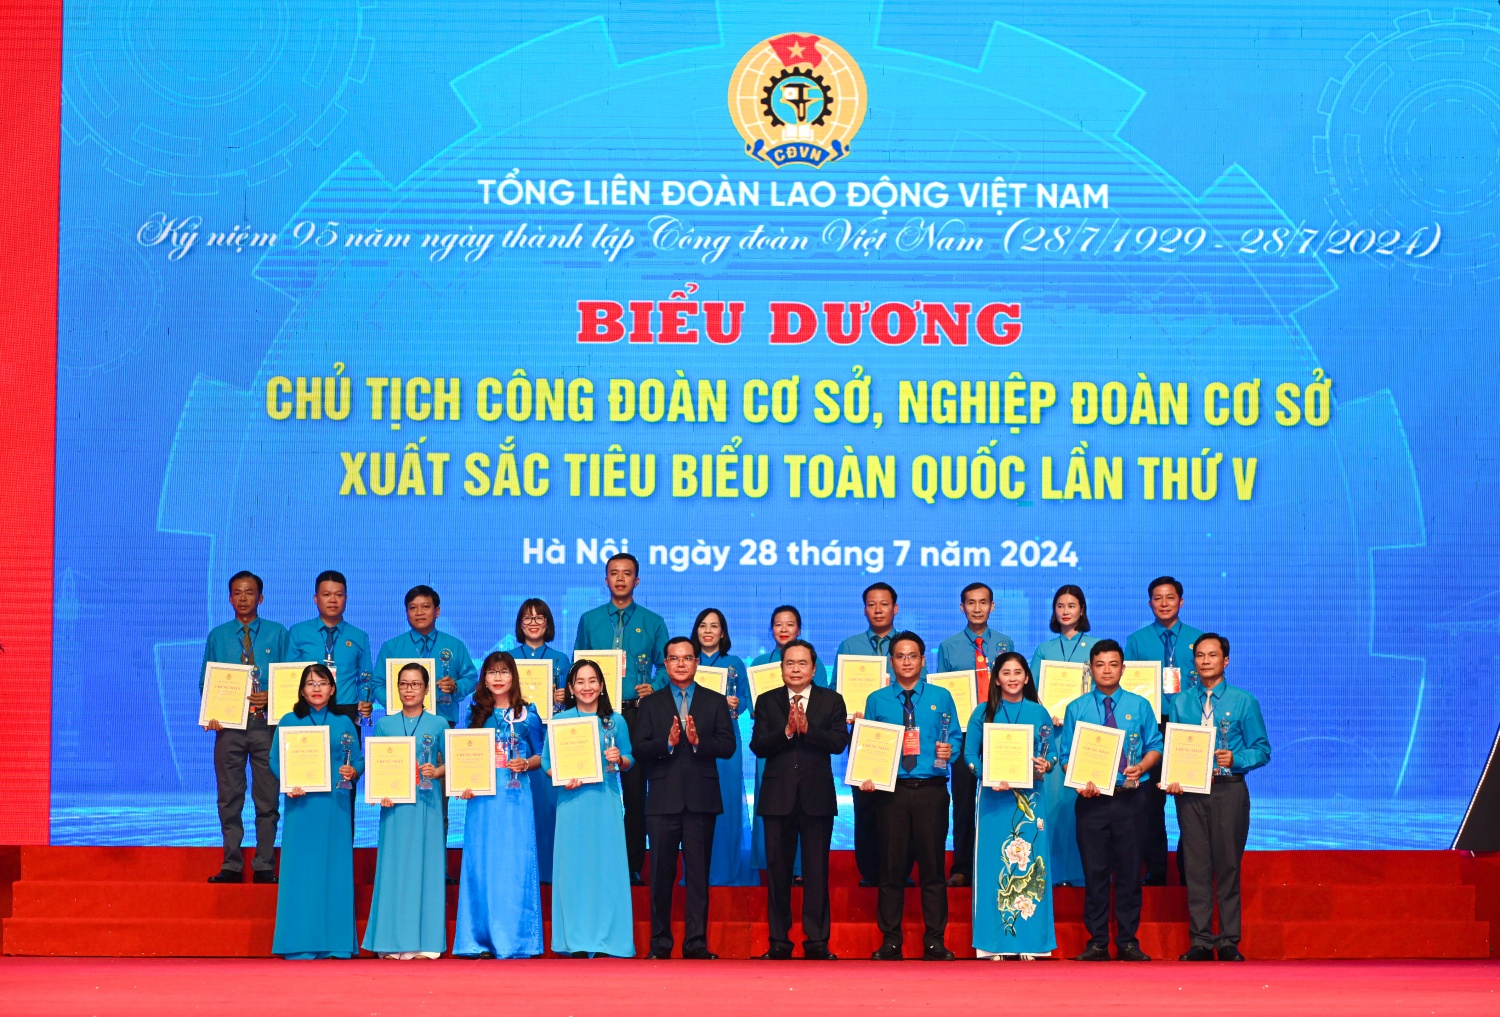 Chủ tịch Quốc hội Trần Thanh Mẫn và Chủ tịch Tổng Liên đoàn Lao động Việt Nam Nguyễn Đình Khang trao biểu trưng và chứng nhận cho các chủ tịch công đoàn cơ sở, nghiệp đoàn cơ sở xuất sắc toàn quốc.